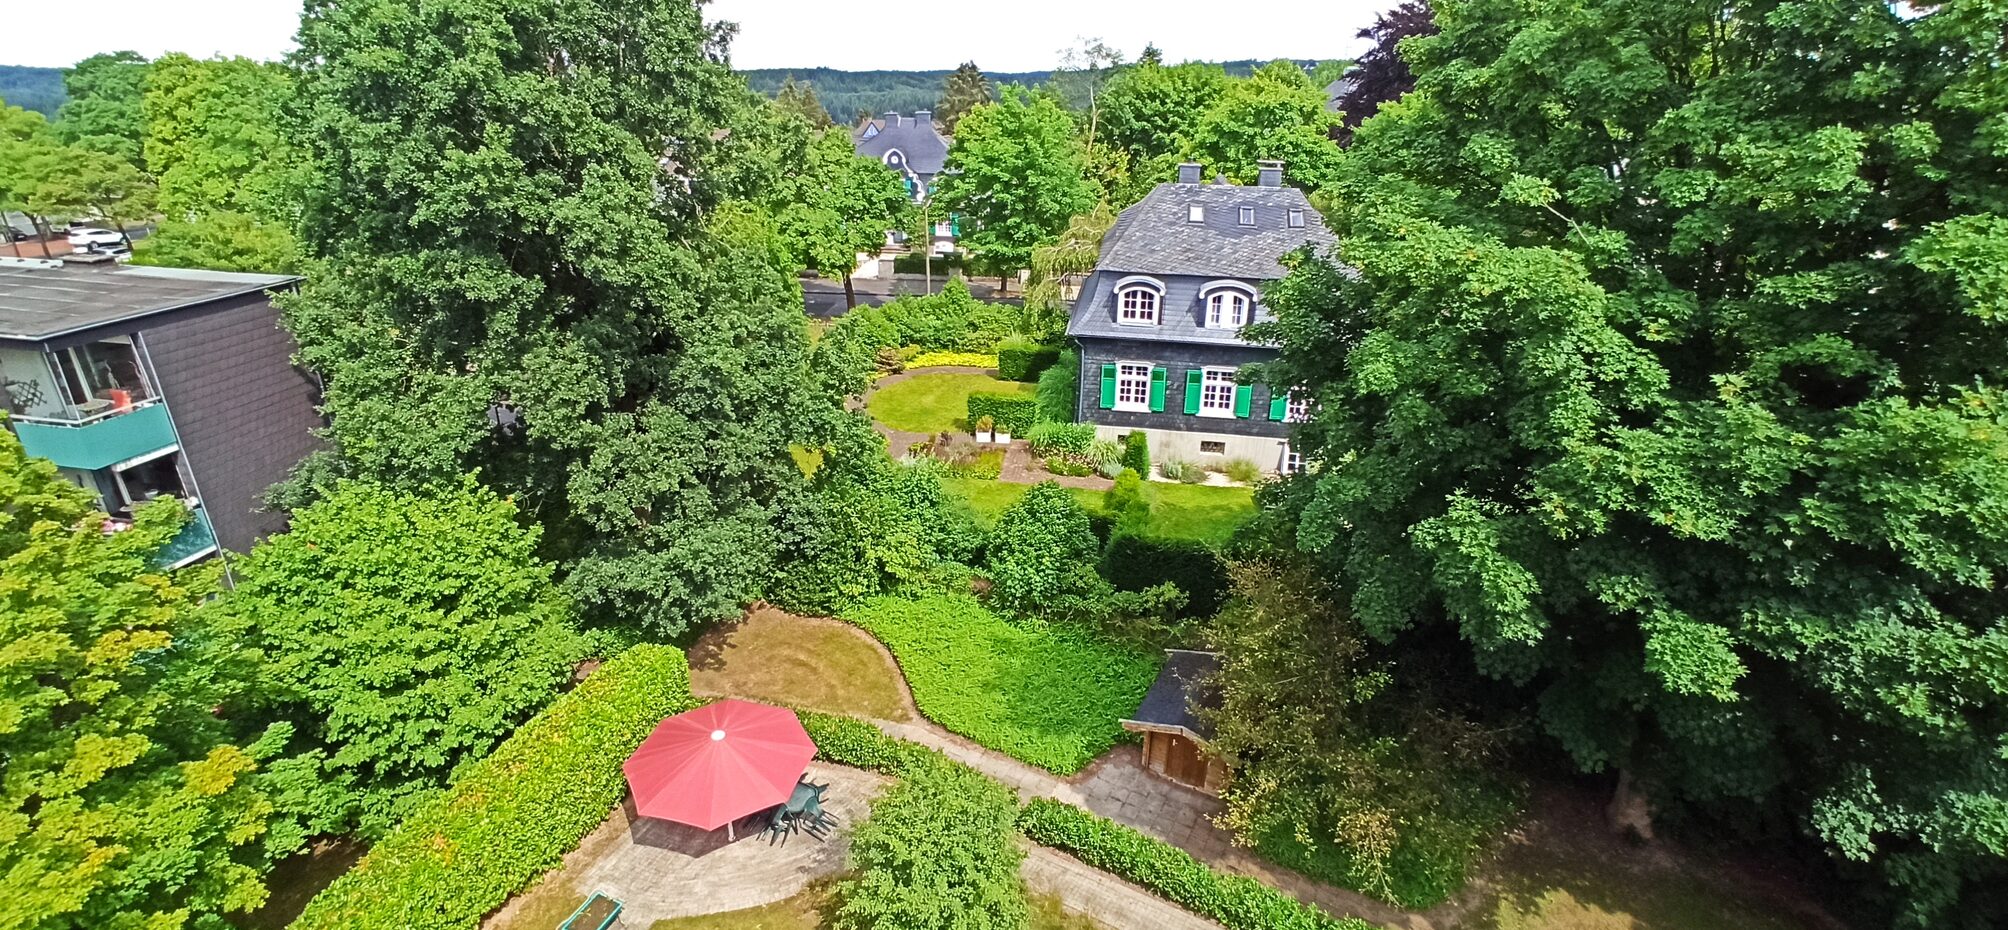 Blick von oben in einen Garten und Häuser im Hintergrund